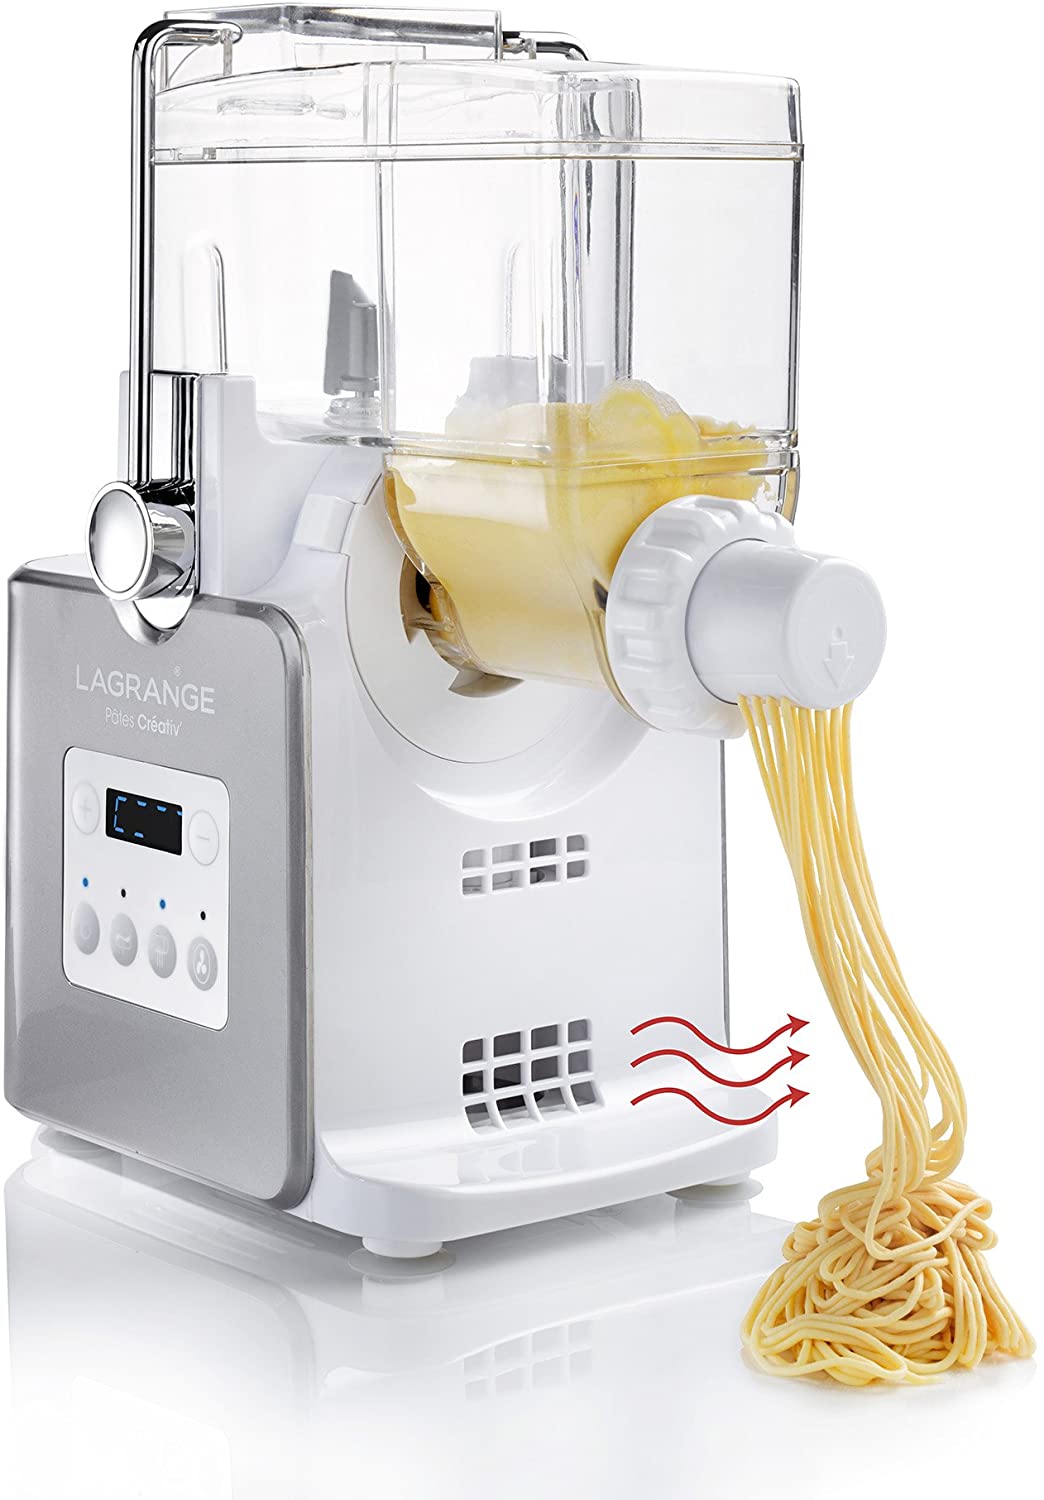 Machine Pâtes Électrique Rouleuse,Machine Pâtes Laminoir Pâtes Electric en Acier Inoxydable,machine spaghetti réglable dépaisseur 0.3-4mm pour Tagliatelle/Spaghettis/Lasagnes/Ravioles/fraîches 135w